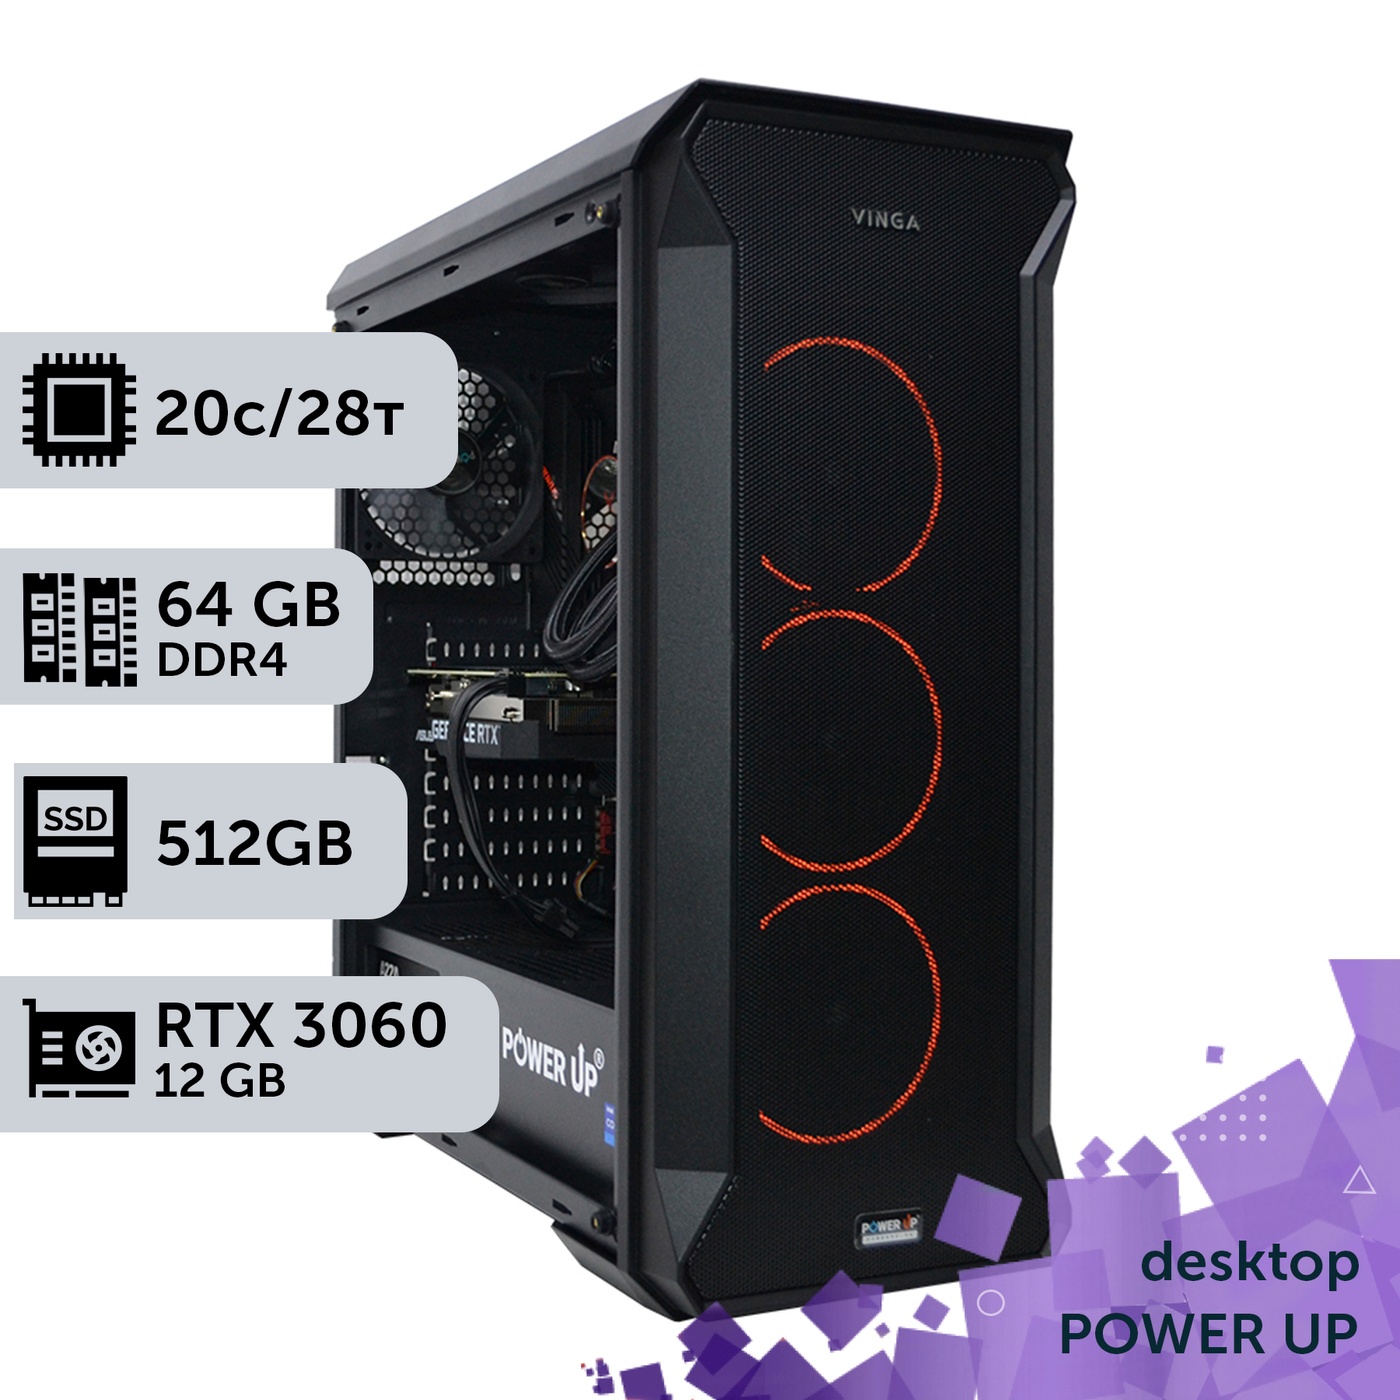 Рабочая станция PowerUp Desktop #313 Core i7 14700K/64 GB/HDD 1 TB/SSD 512GB/GeForce RTX 3060 12GB